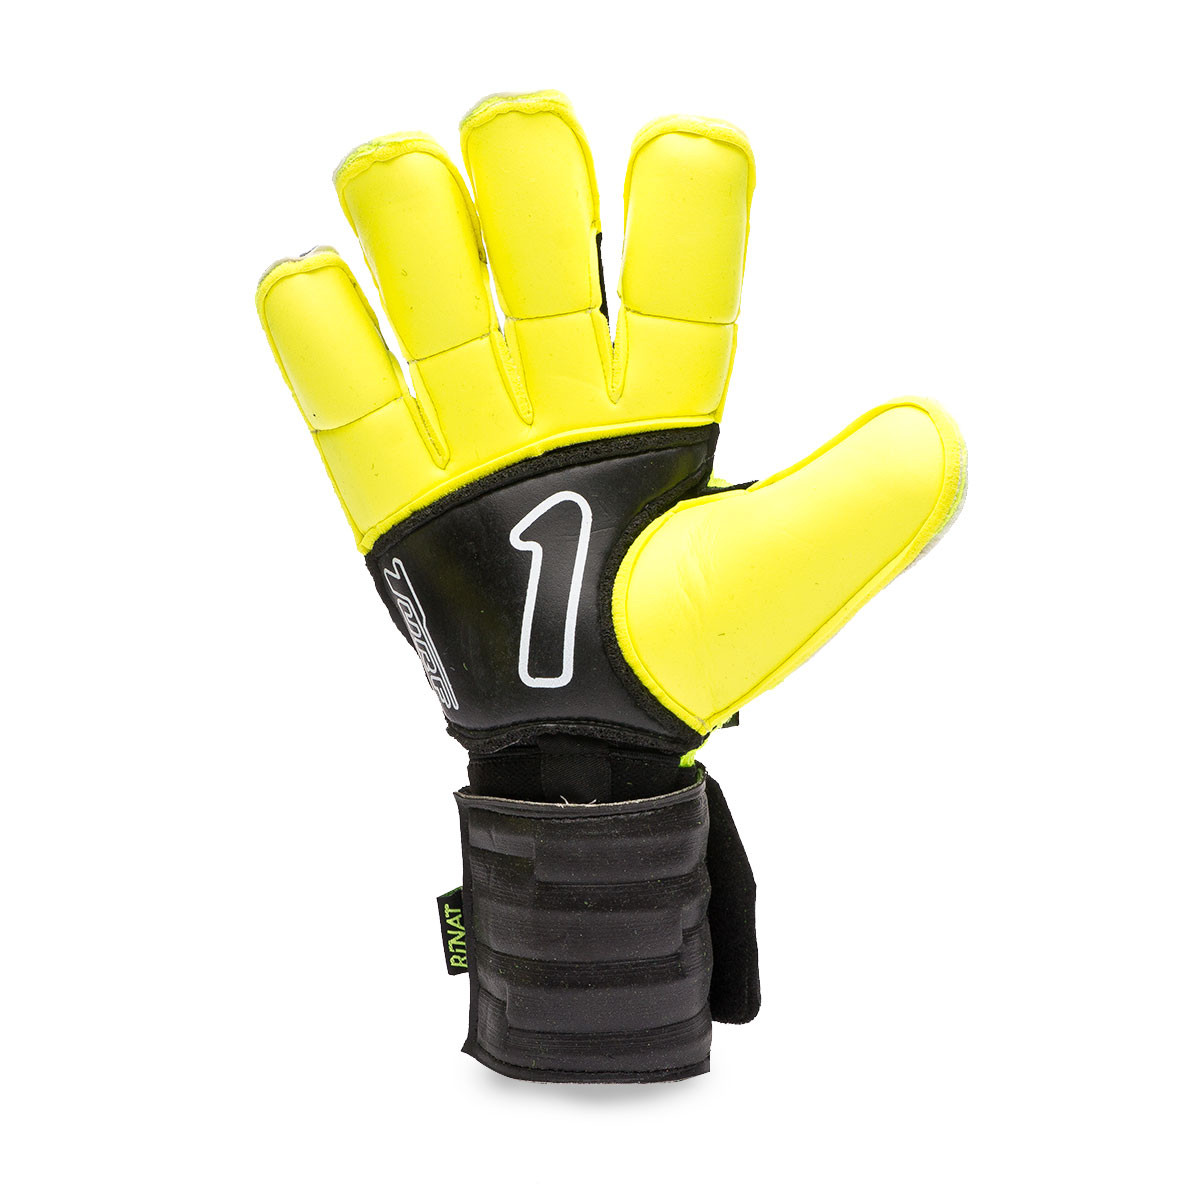 Rinat Egotiko Elemental Alpha Goalkeeper Glove